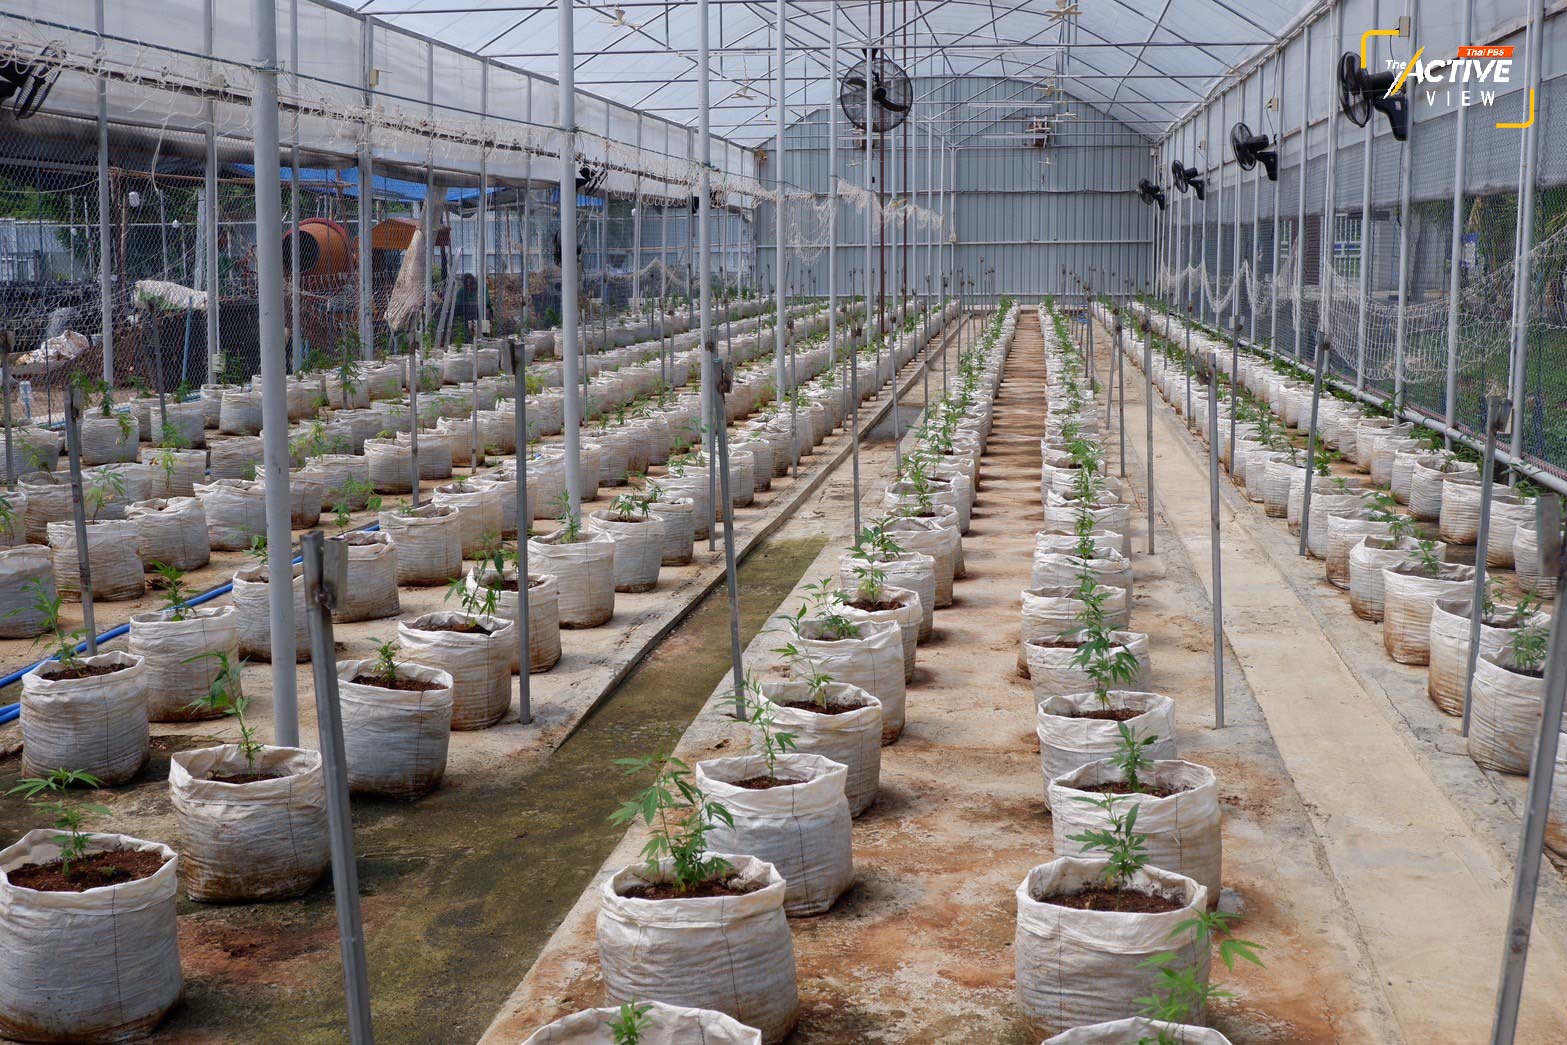 โรงปลูกกัญชา จำนวน 500 ต้น ของวิสาหกิจชุมชนพืชสมุนไพร อ. บ้านธิ จ.ลำพูน ให้ผลผลิตเป็นช่อดอก 150 กิโลกรัม ต่อ 1 รอบการปลูก ระยะเวลา 3 เดือน